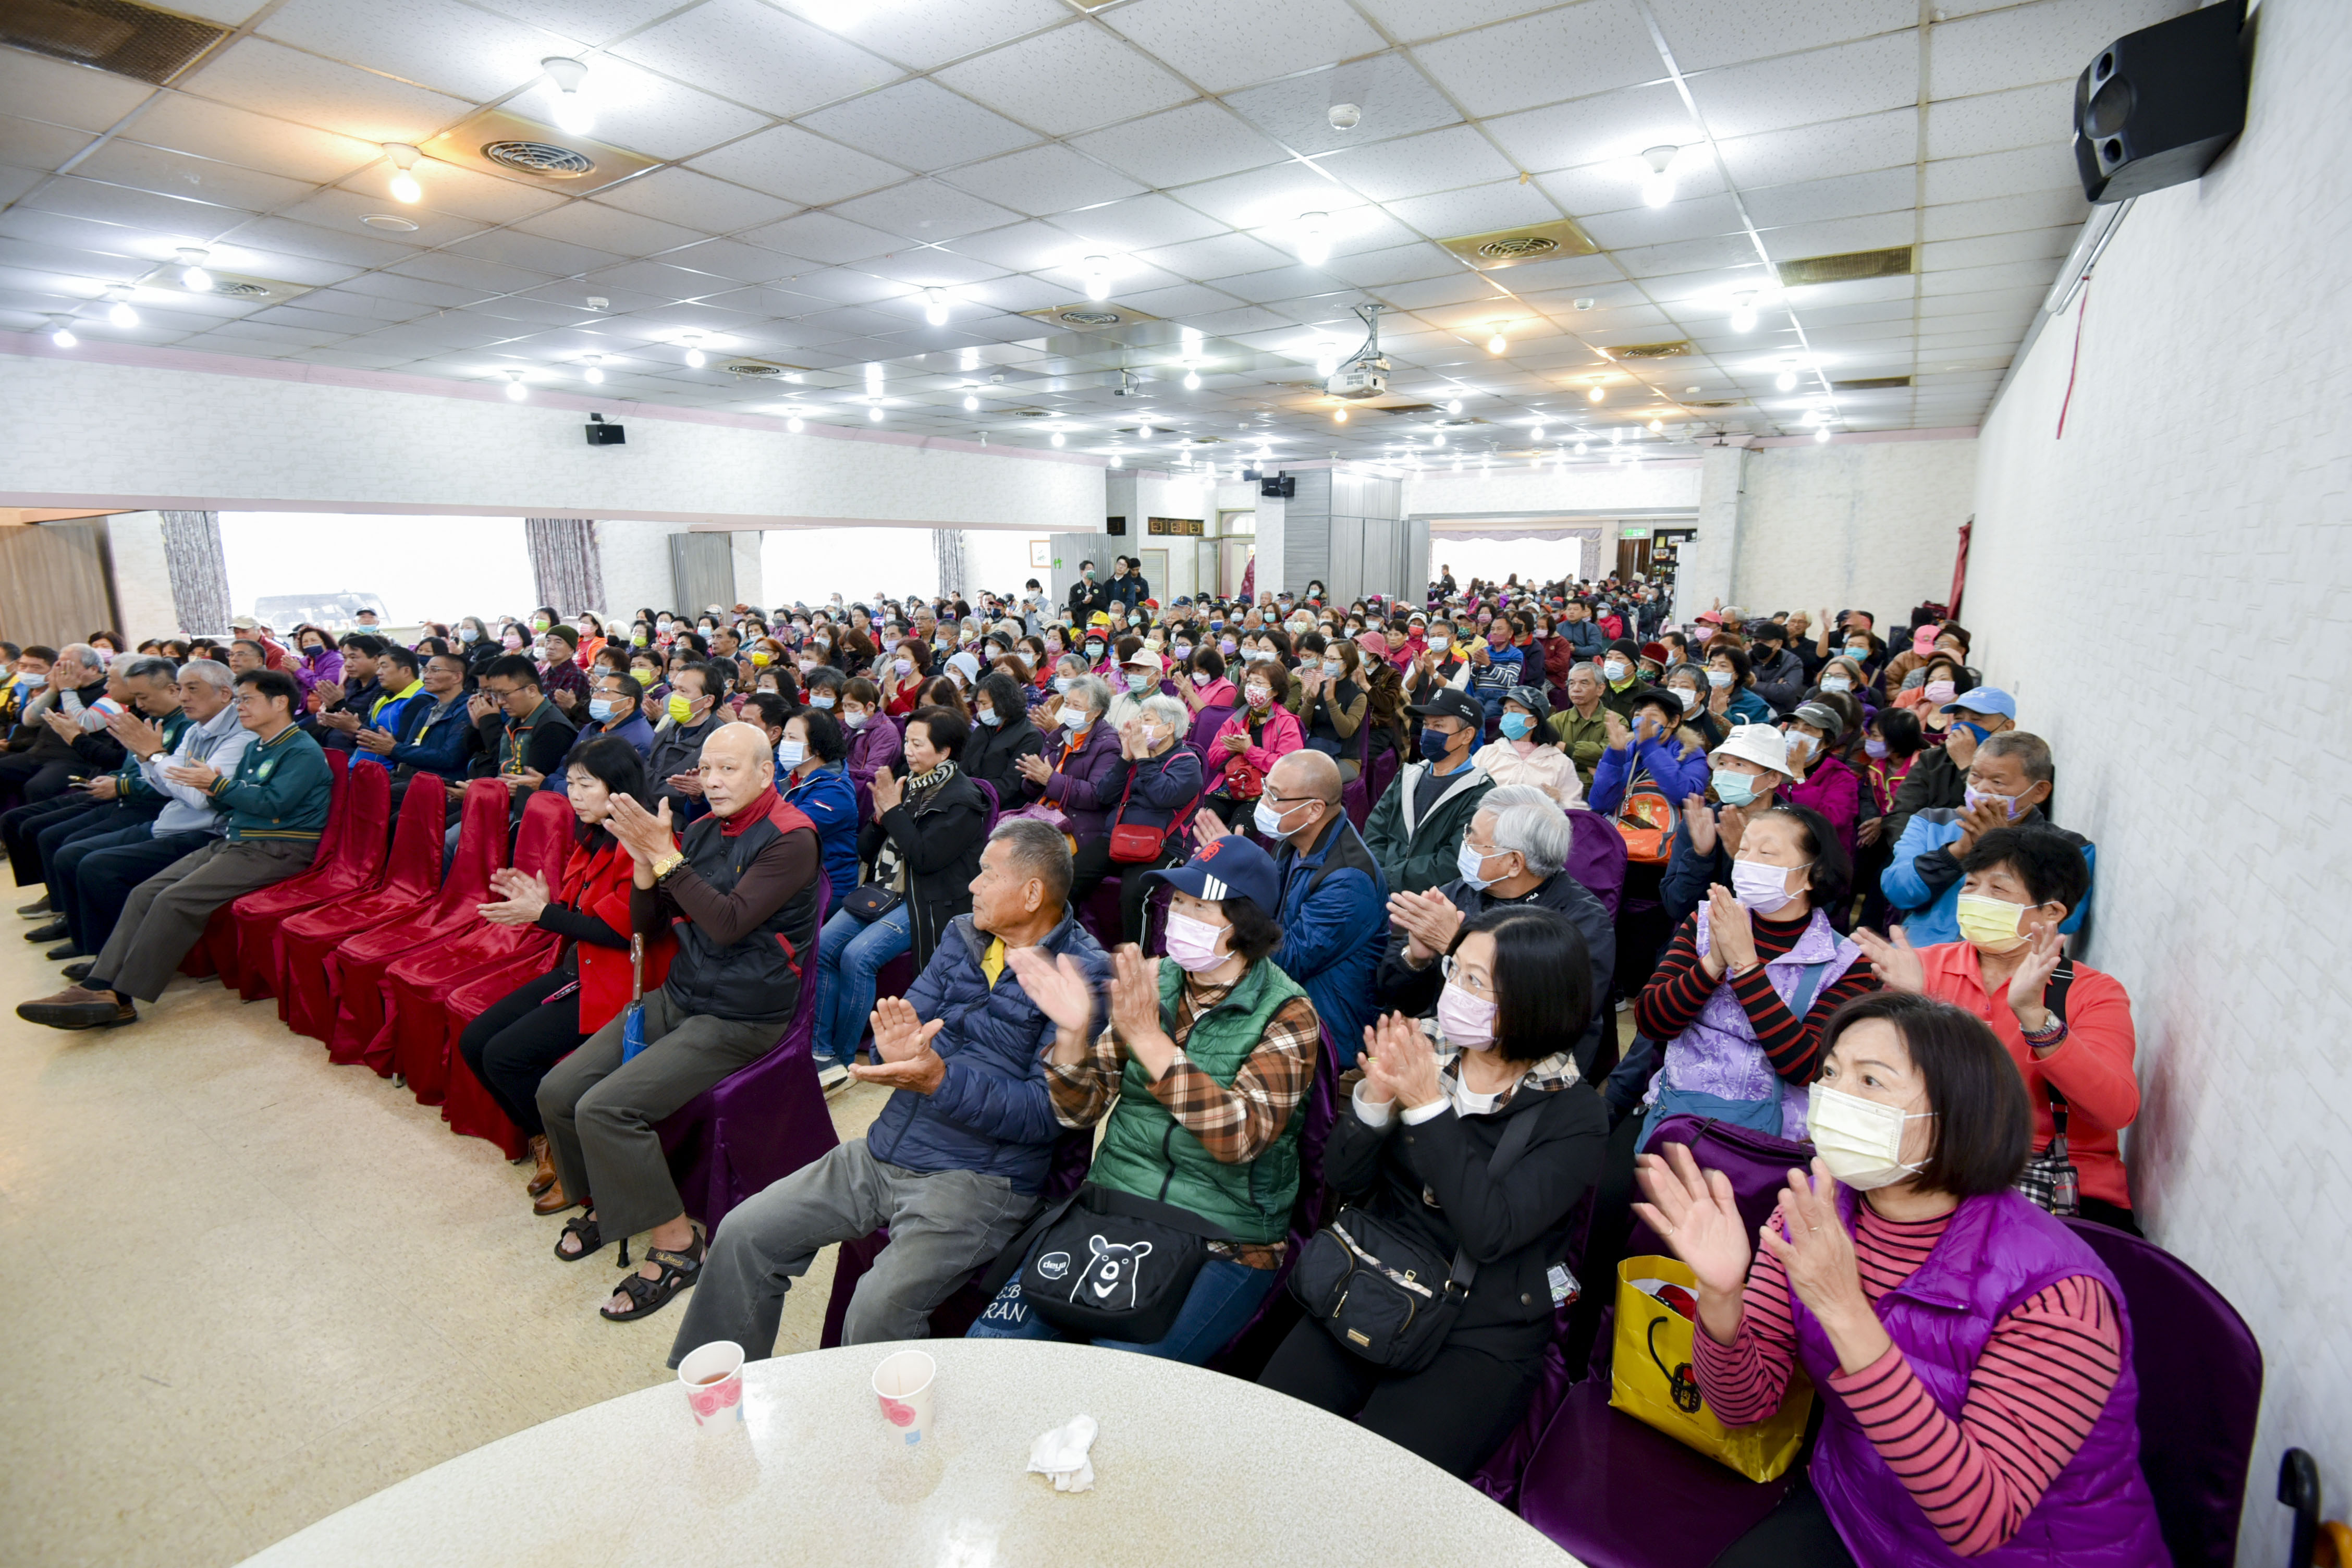 桃 園 市 信 賴 台 灣 之 友 會 成 立 八 德 分 會 ， 現 場 擠 滿 熱 情 民 眾 。 